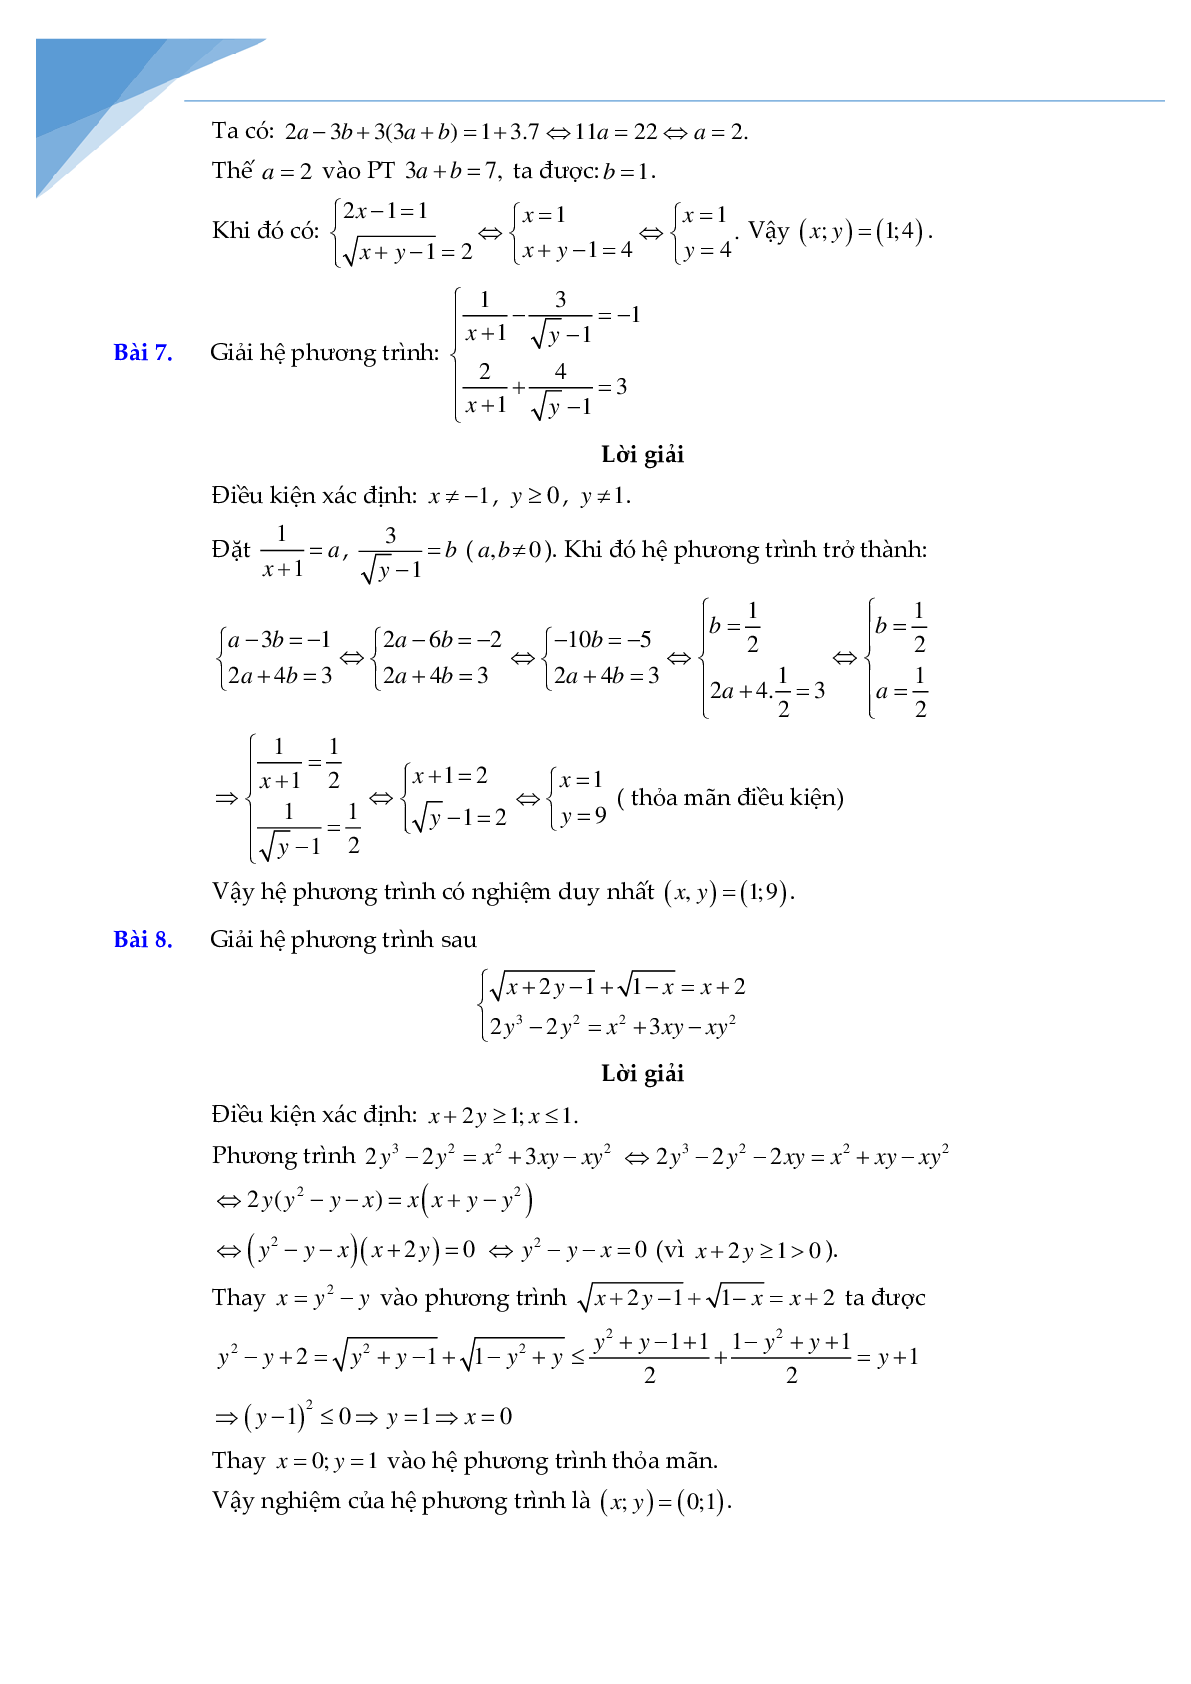 Chuyên đề hệ phương trình bồi dưỡng học sinh giỏi toán (trang 5)